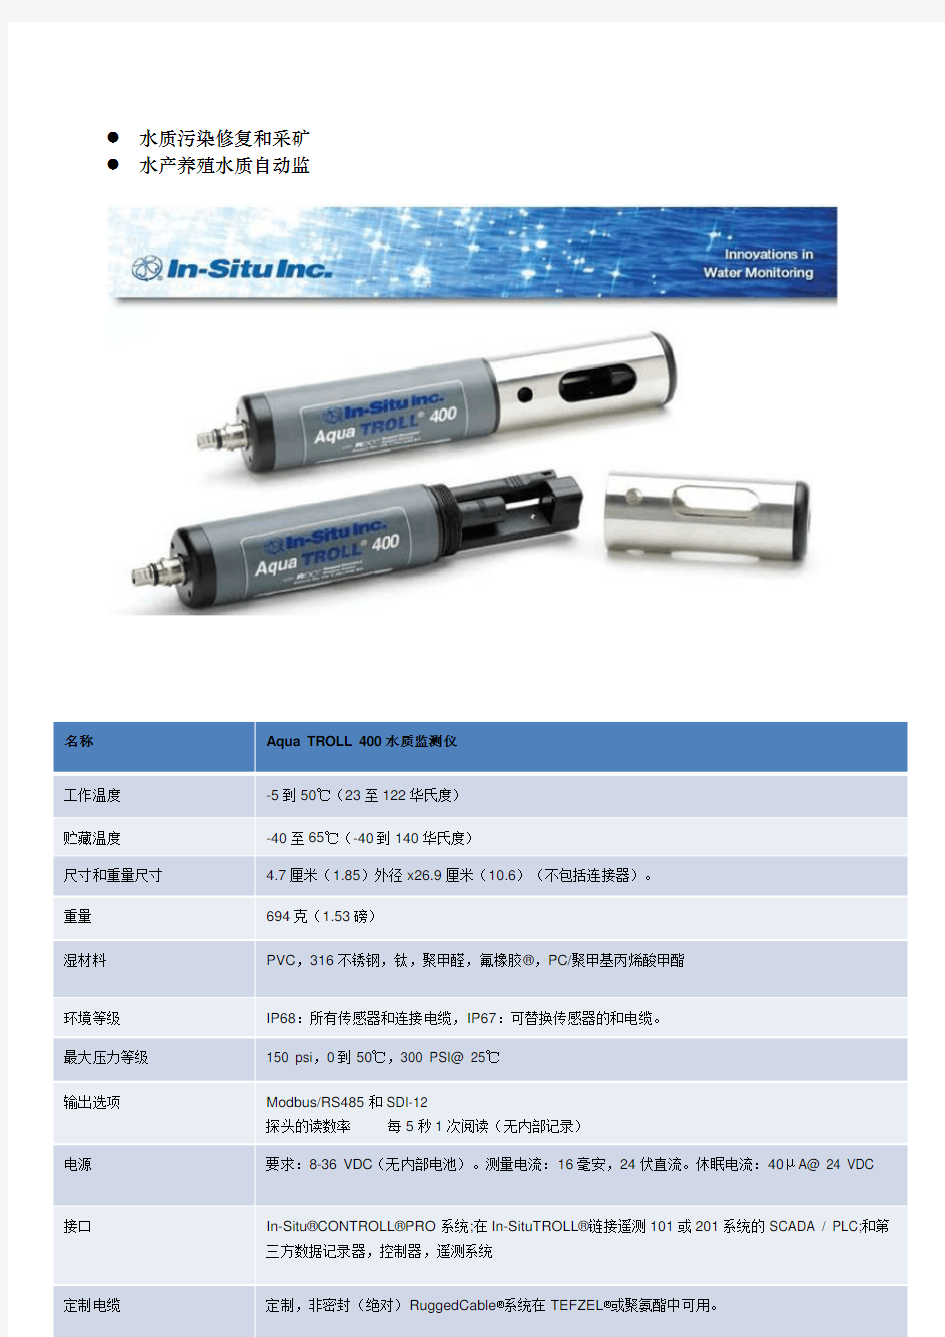 多参数水质分析仪 Aqua TROLL 400